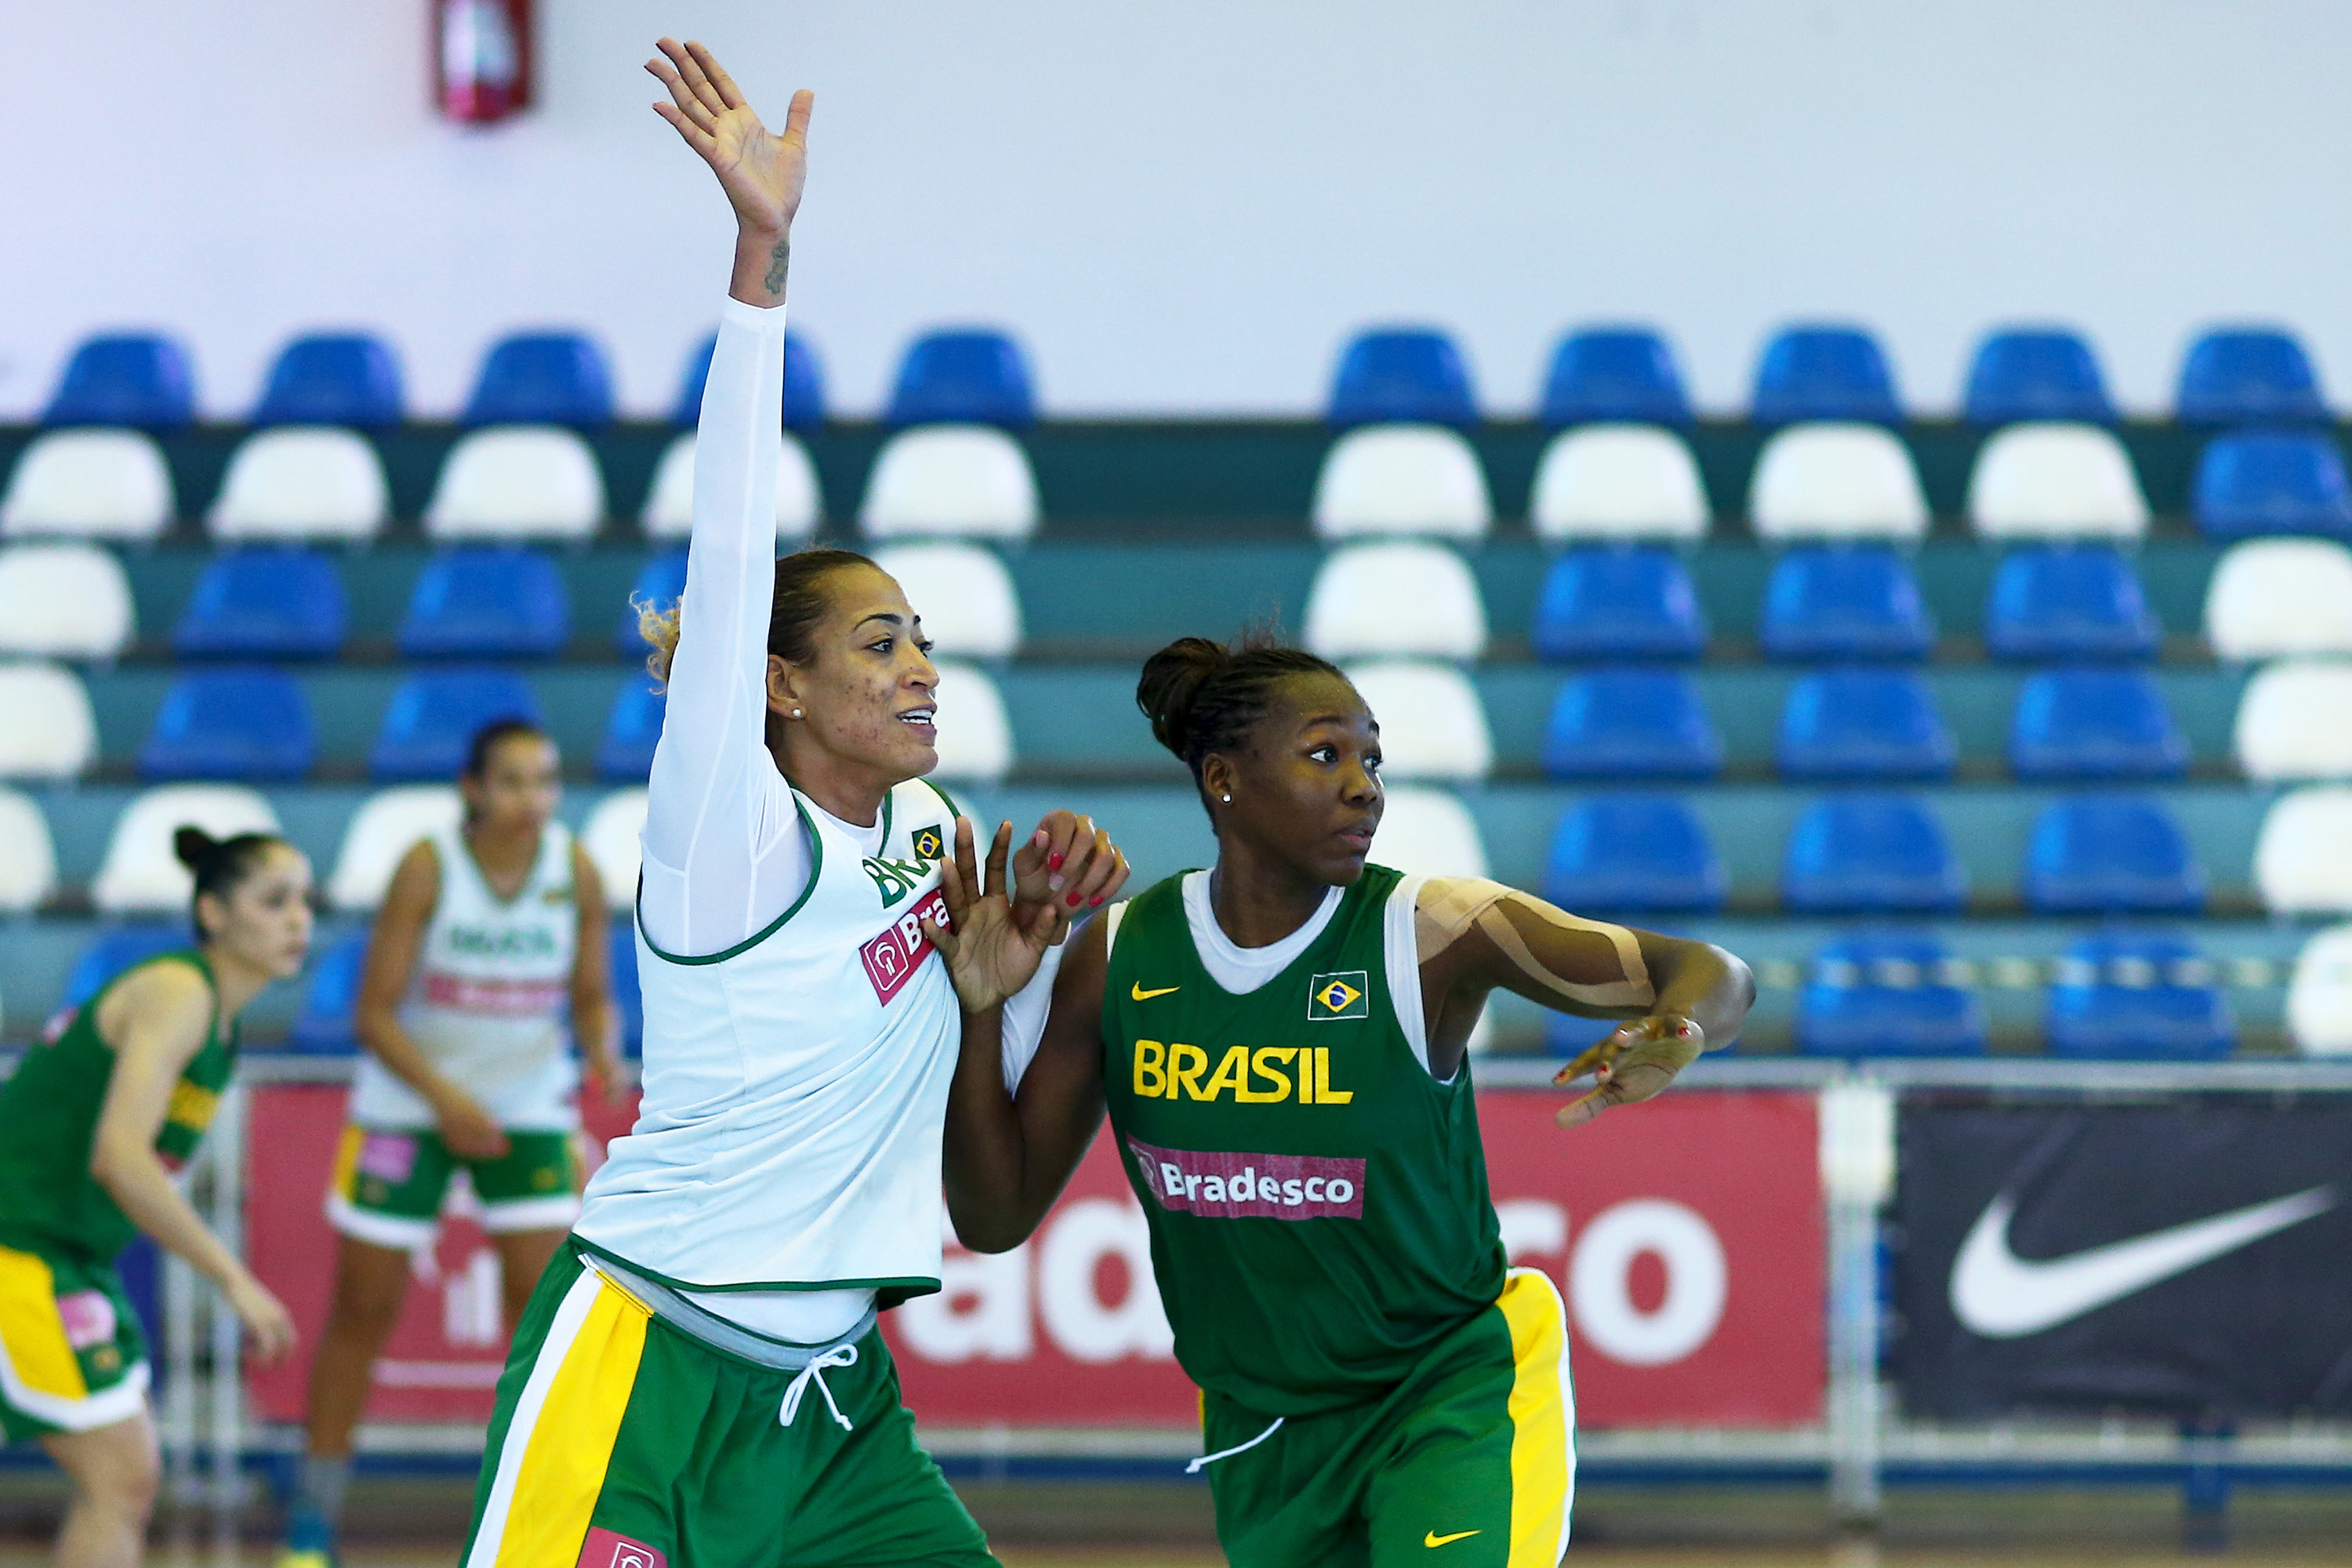 Érika de Souza e Clarissa dos Santos são dois dos nomes convocados pelo técnico Luiz Augusto Zanon para defender o Brasil no Campeonato Mundial de Basquete Feminino (Wagner Carmo/Inovafoto)